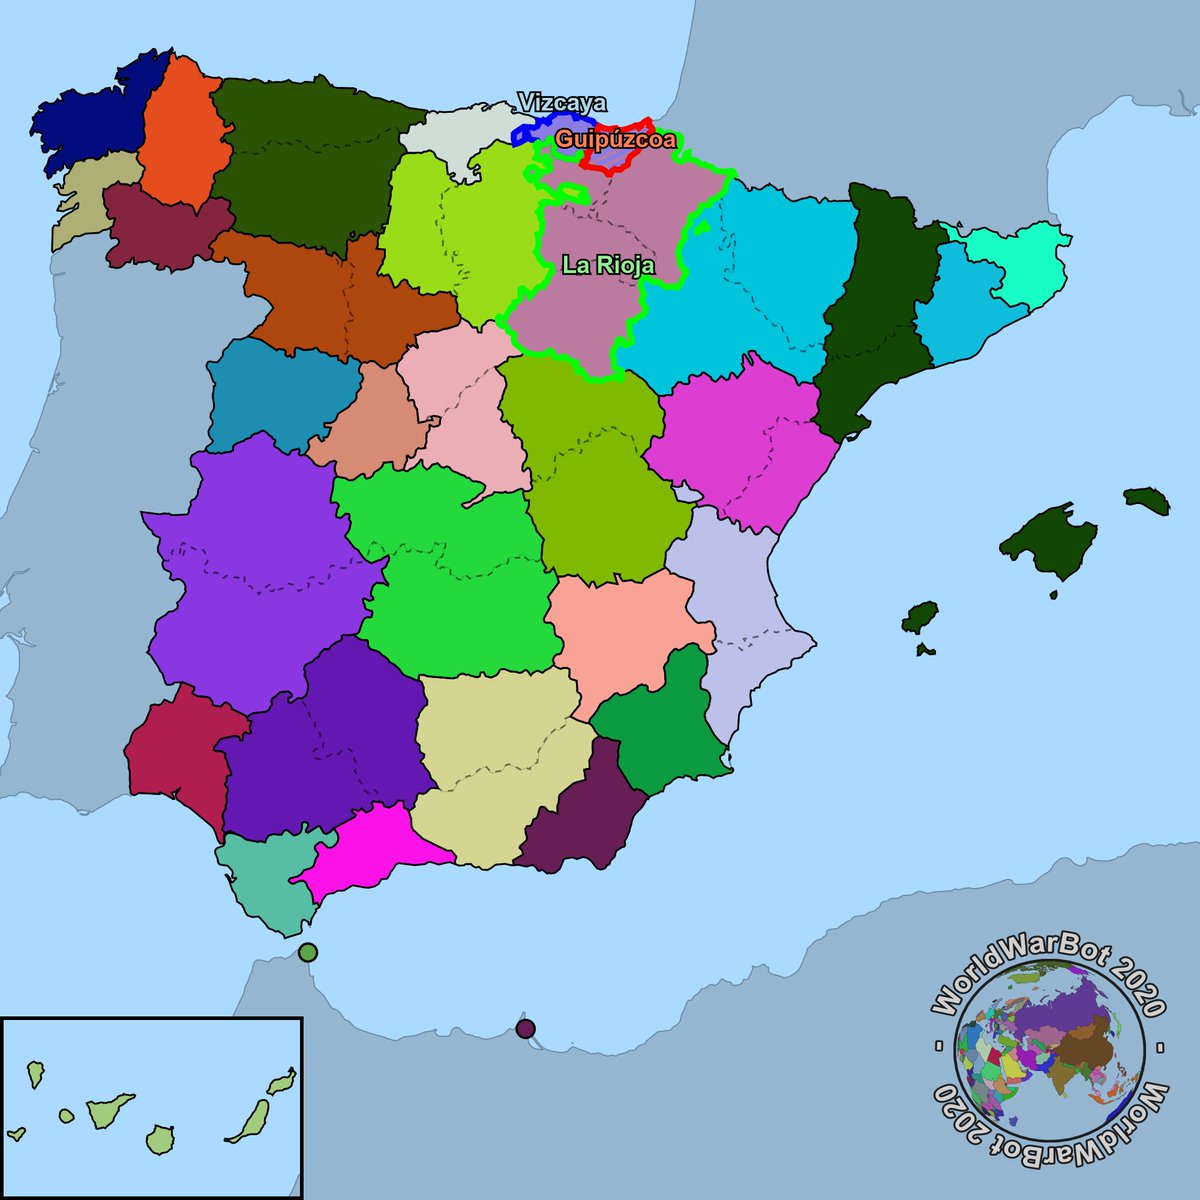 Segunda semana de agosto, año 2020, La Rioja ha conquistado la provincia de Guipúzcoa anteriormente ocupada por Vizcaya.
#LaRioja #Vizcaya